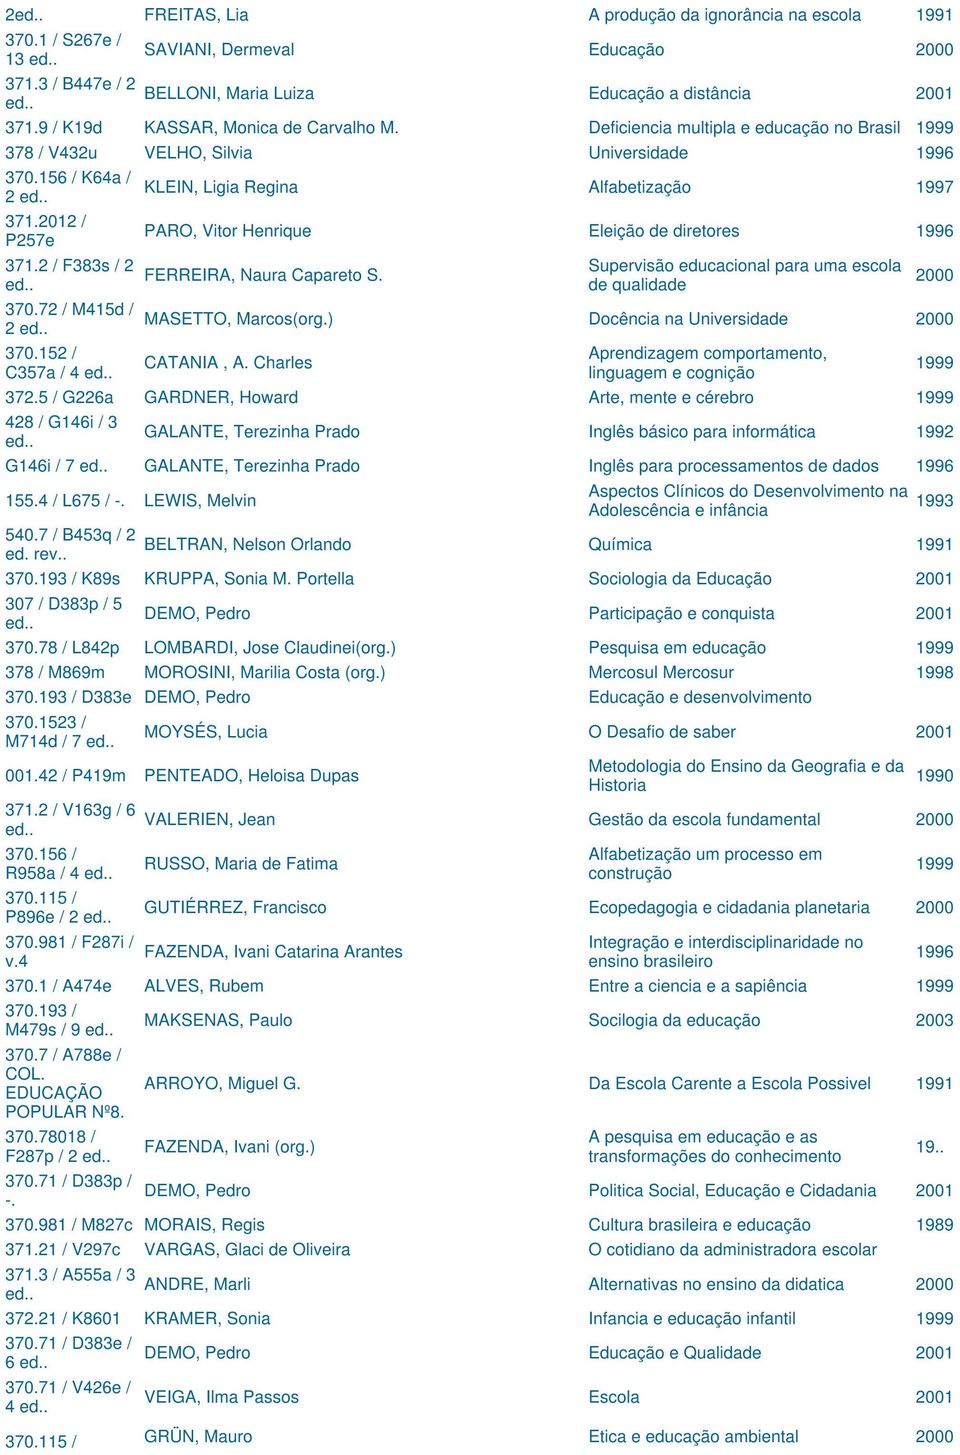 2012 / P257e 371.2 / F383s / 2 370.72 / M415d / 2 370.152 / C357a / 4 PARO, Vitor Henrique Eleição de diretores 1996 FERREIRA, Naura Capareto S.